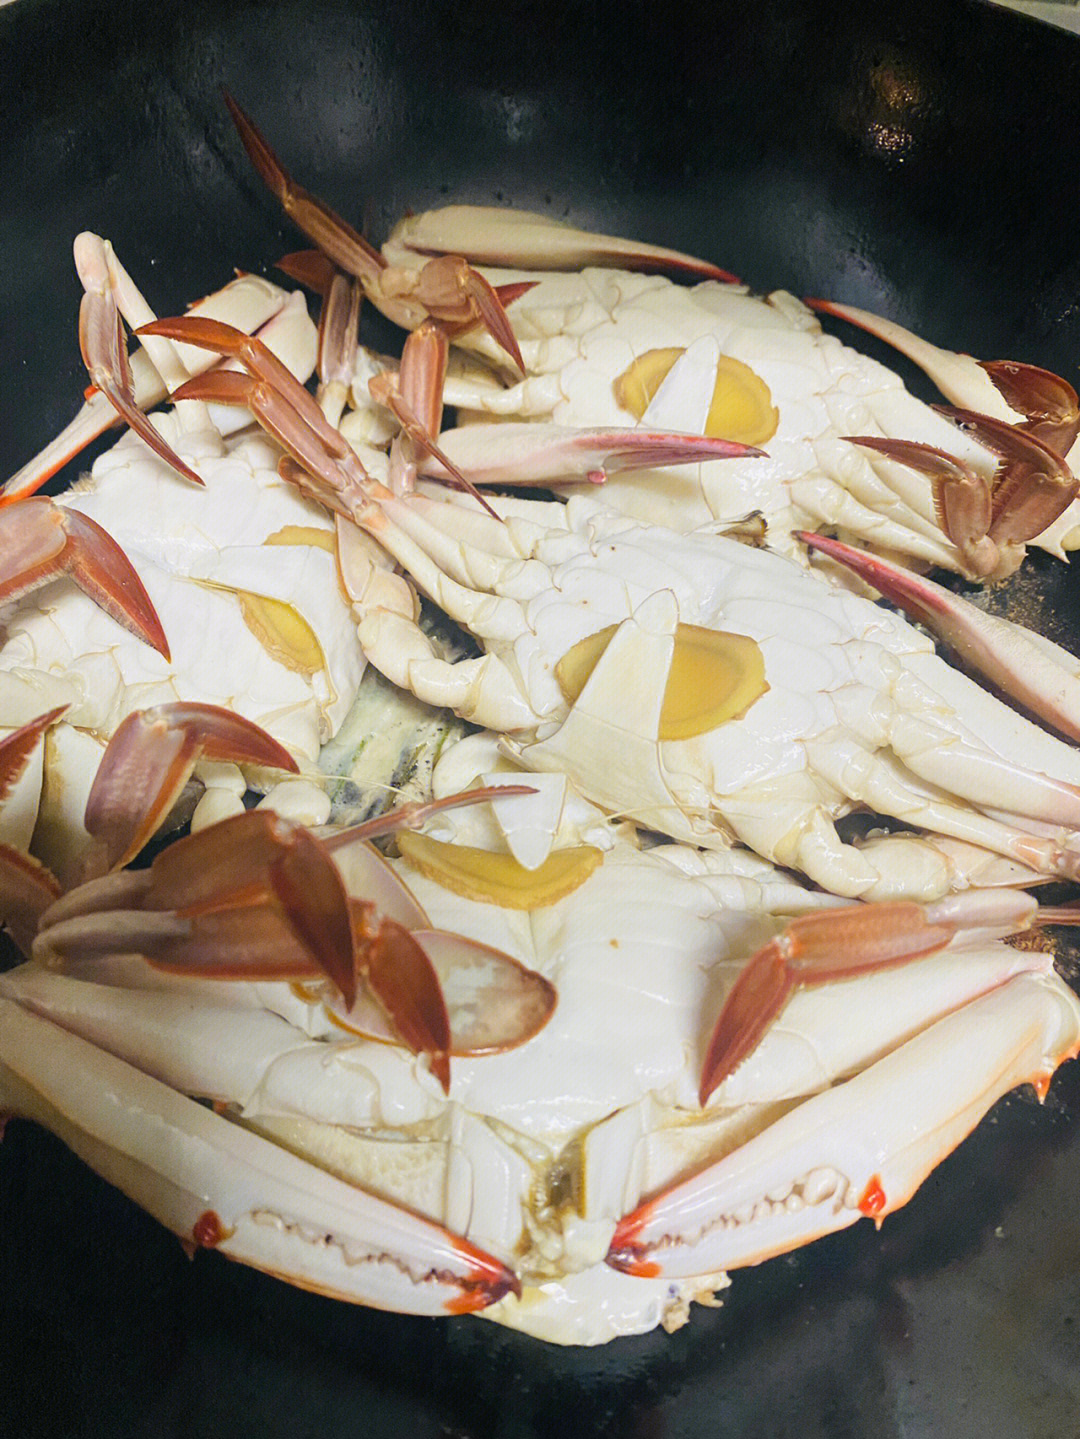 梭子蟹吃法剥法步骤图图片